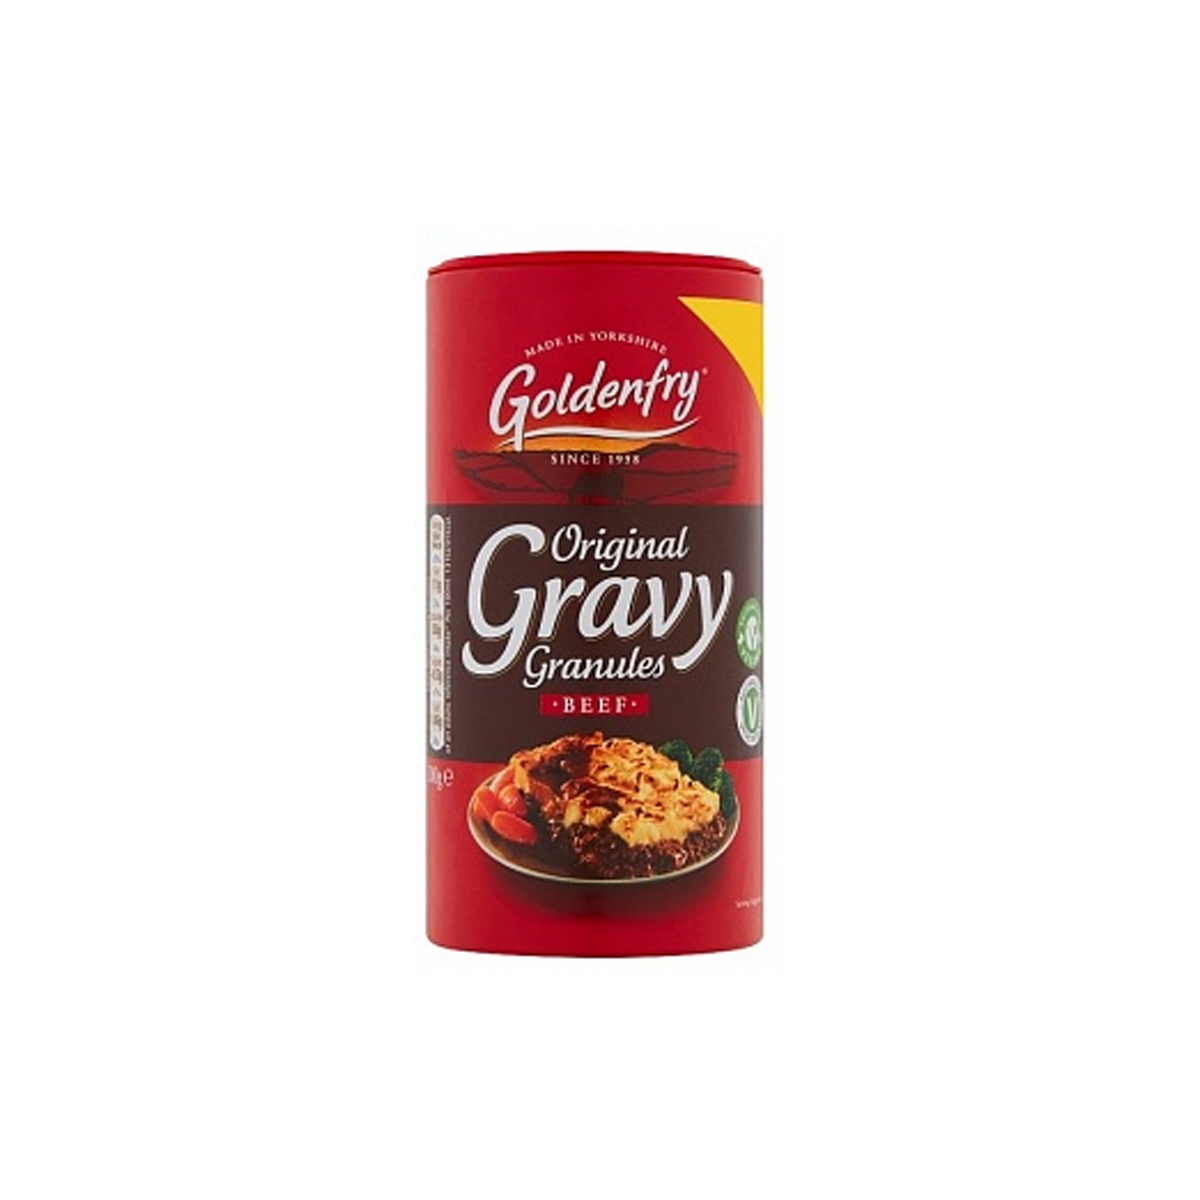 Goldenfry Beef Gravy Granules 300G